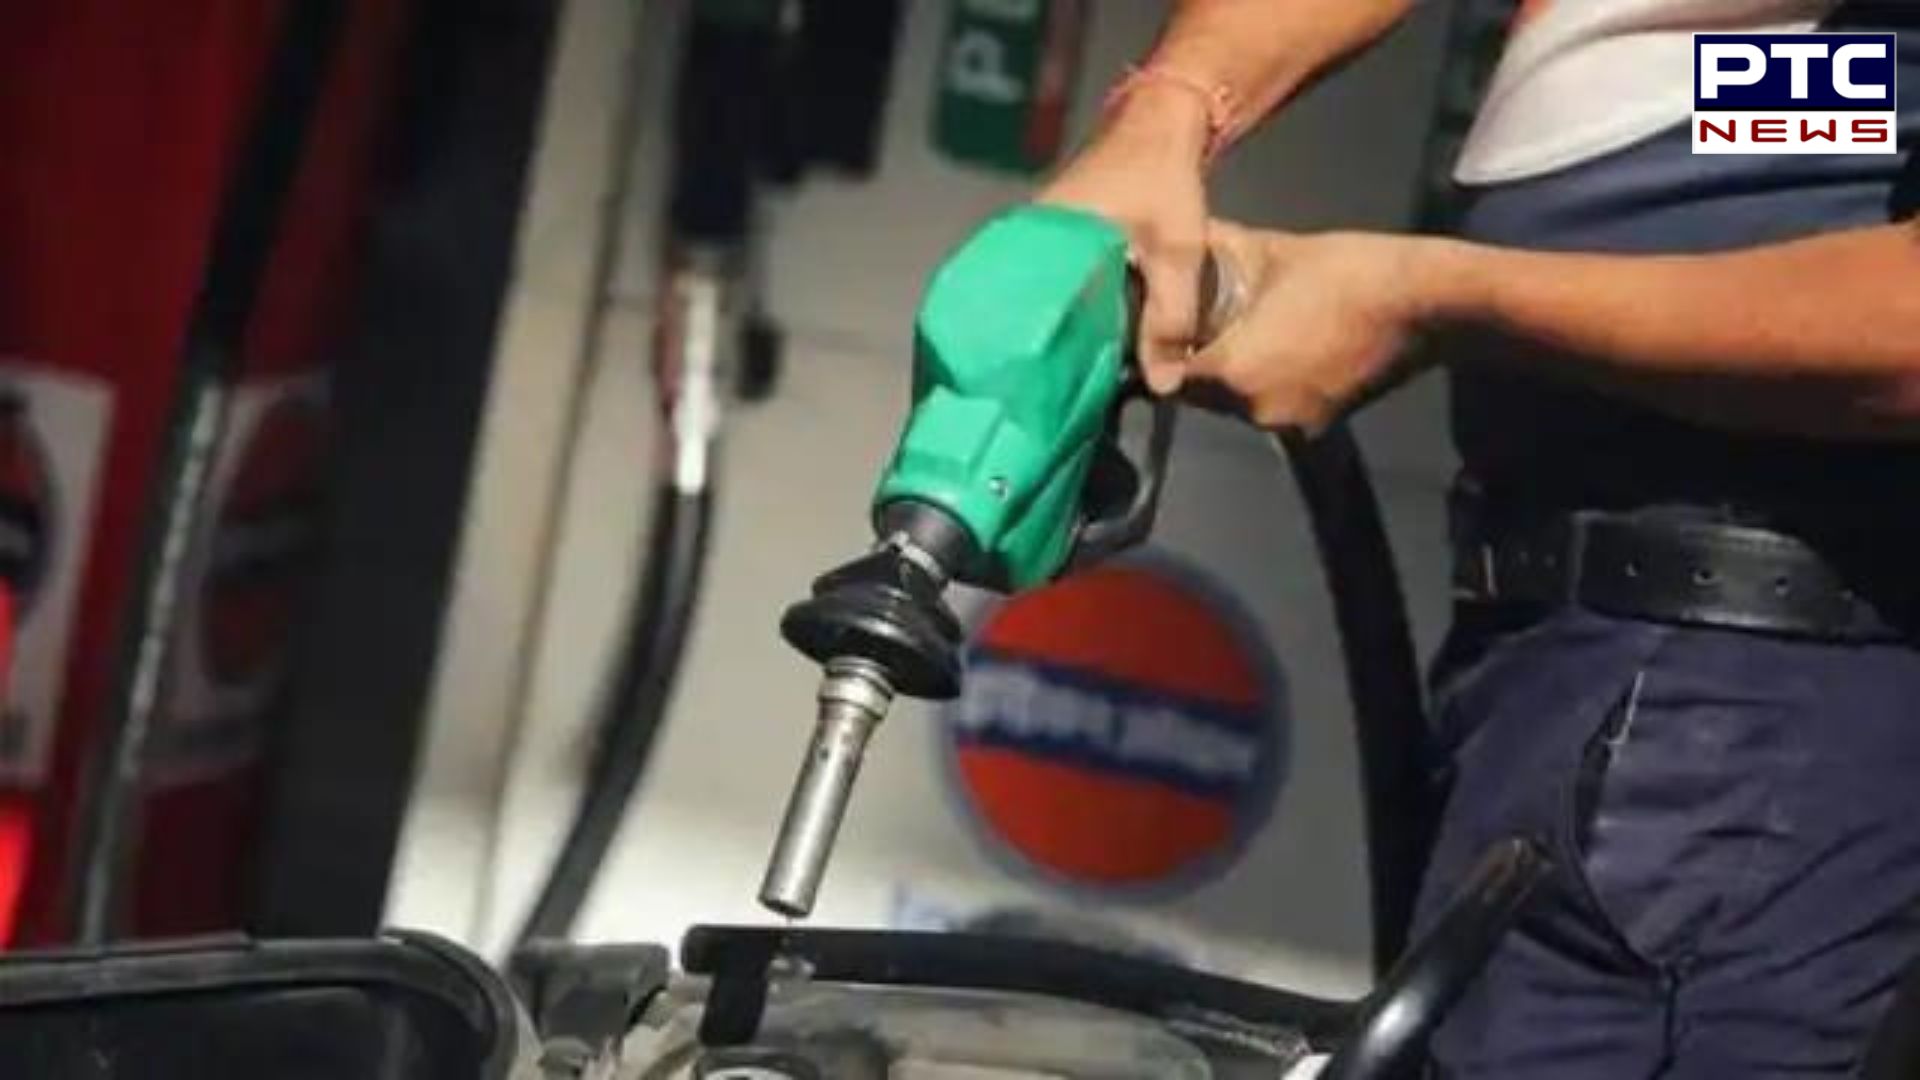 Punjab Petrol Pump: ਅੱਜ ਪੈਟਰੋਲ ਨਹੀਂ ਖਰੀਦਣਗੇ ਪੰਪ ਮਾਲਕ, ਨਾਲ ਕੀਤਾ ਇਹ ਐਲਾਨ